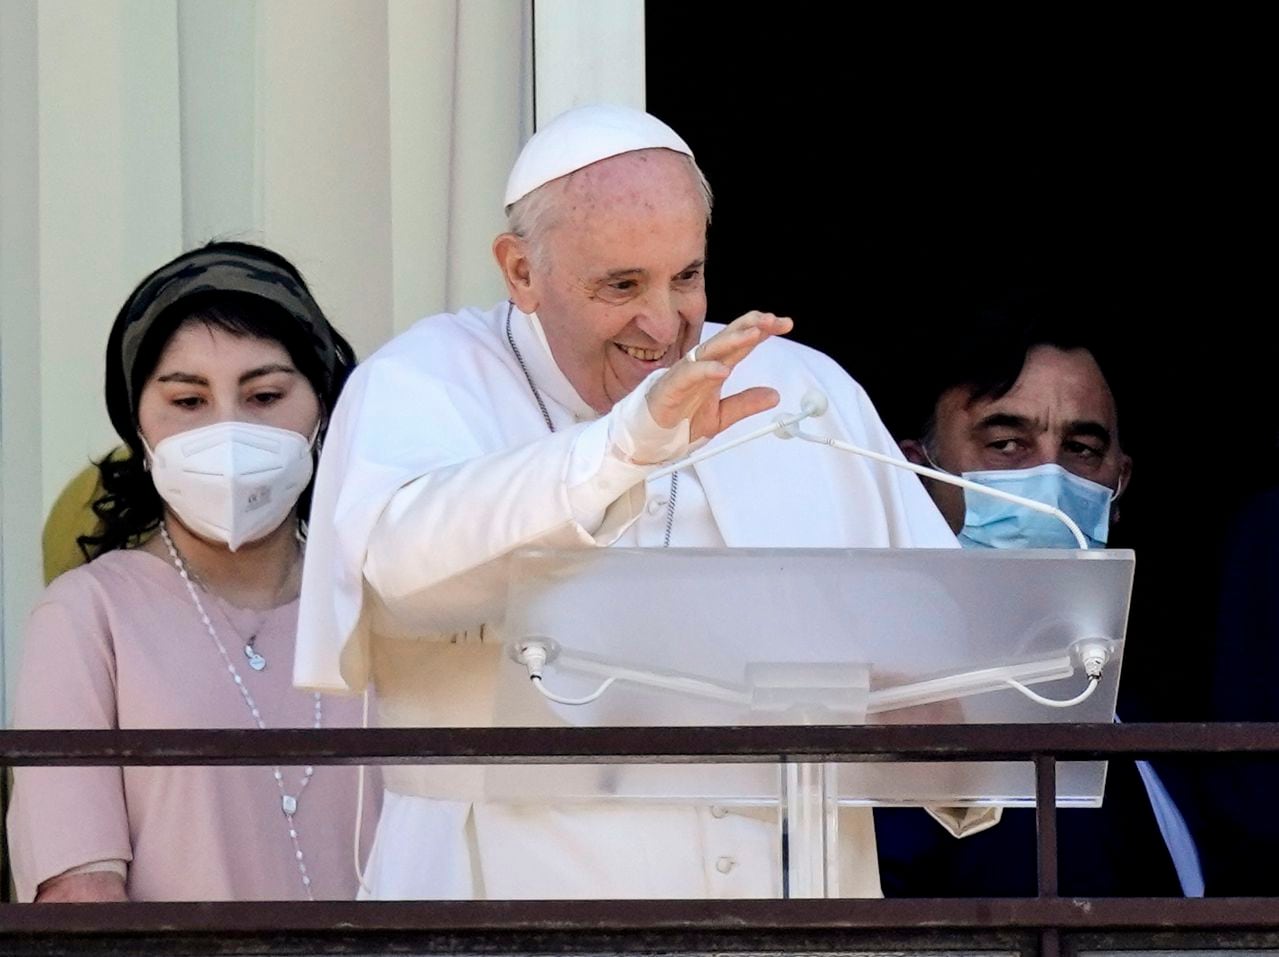 El papa Francisco se ha sometido a varios cirugías antes y durante su mandato como sumo pontífice